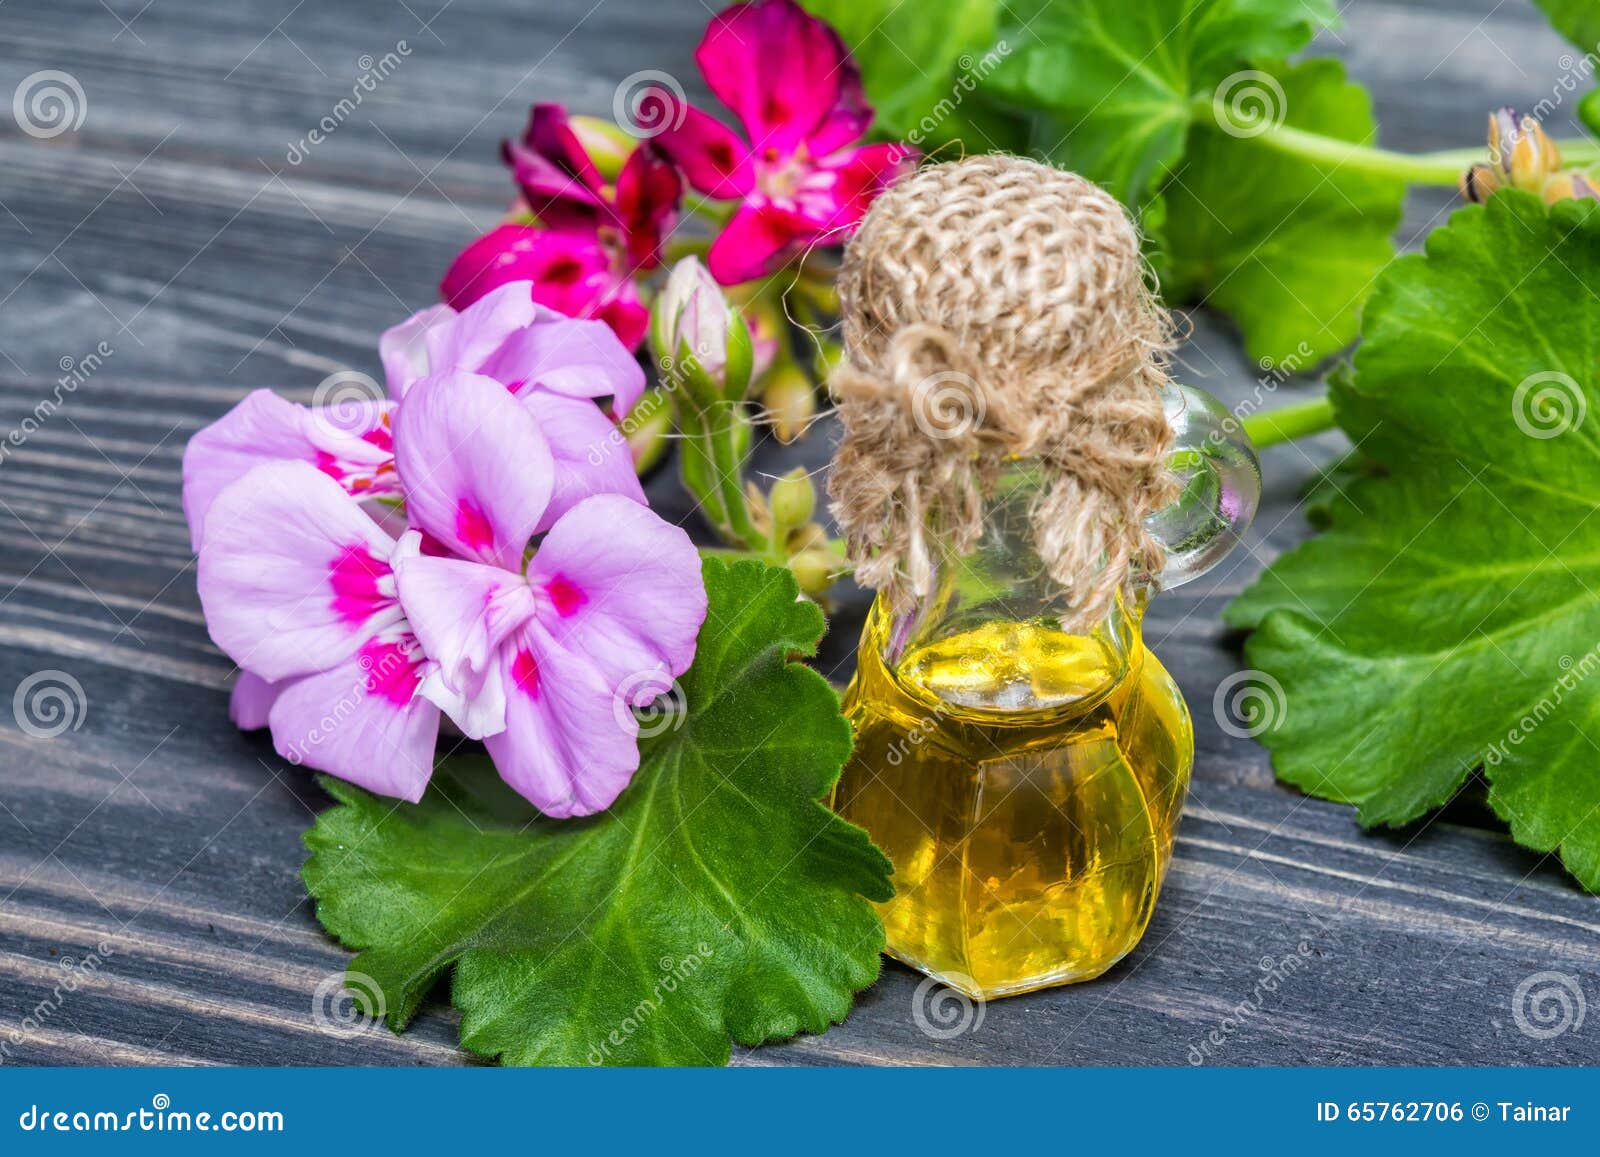 essential geranium oil